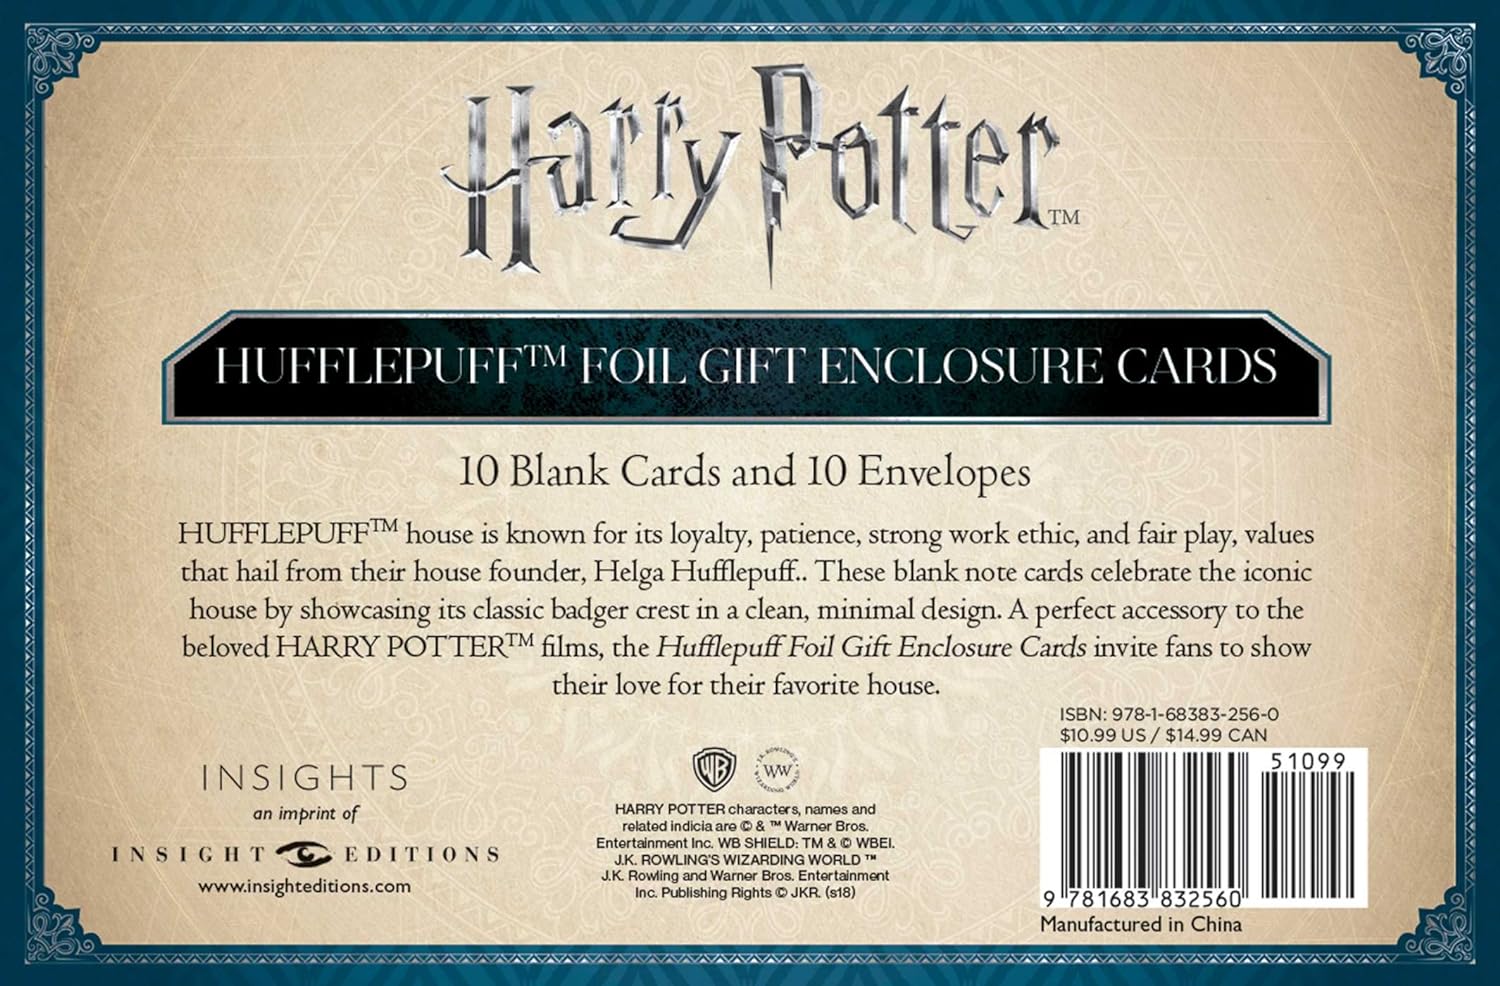 Harry Potter: Hufflepuff Crest Foil Gift Enclosure Cards